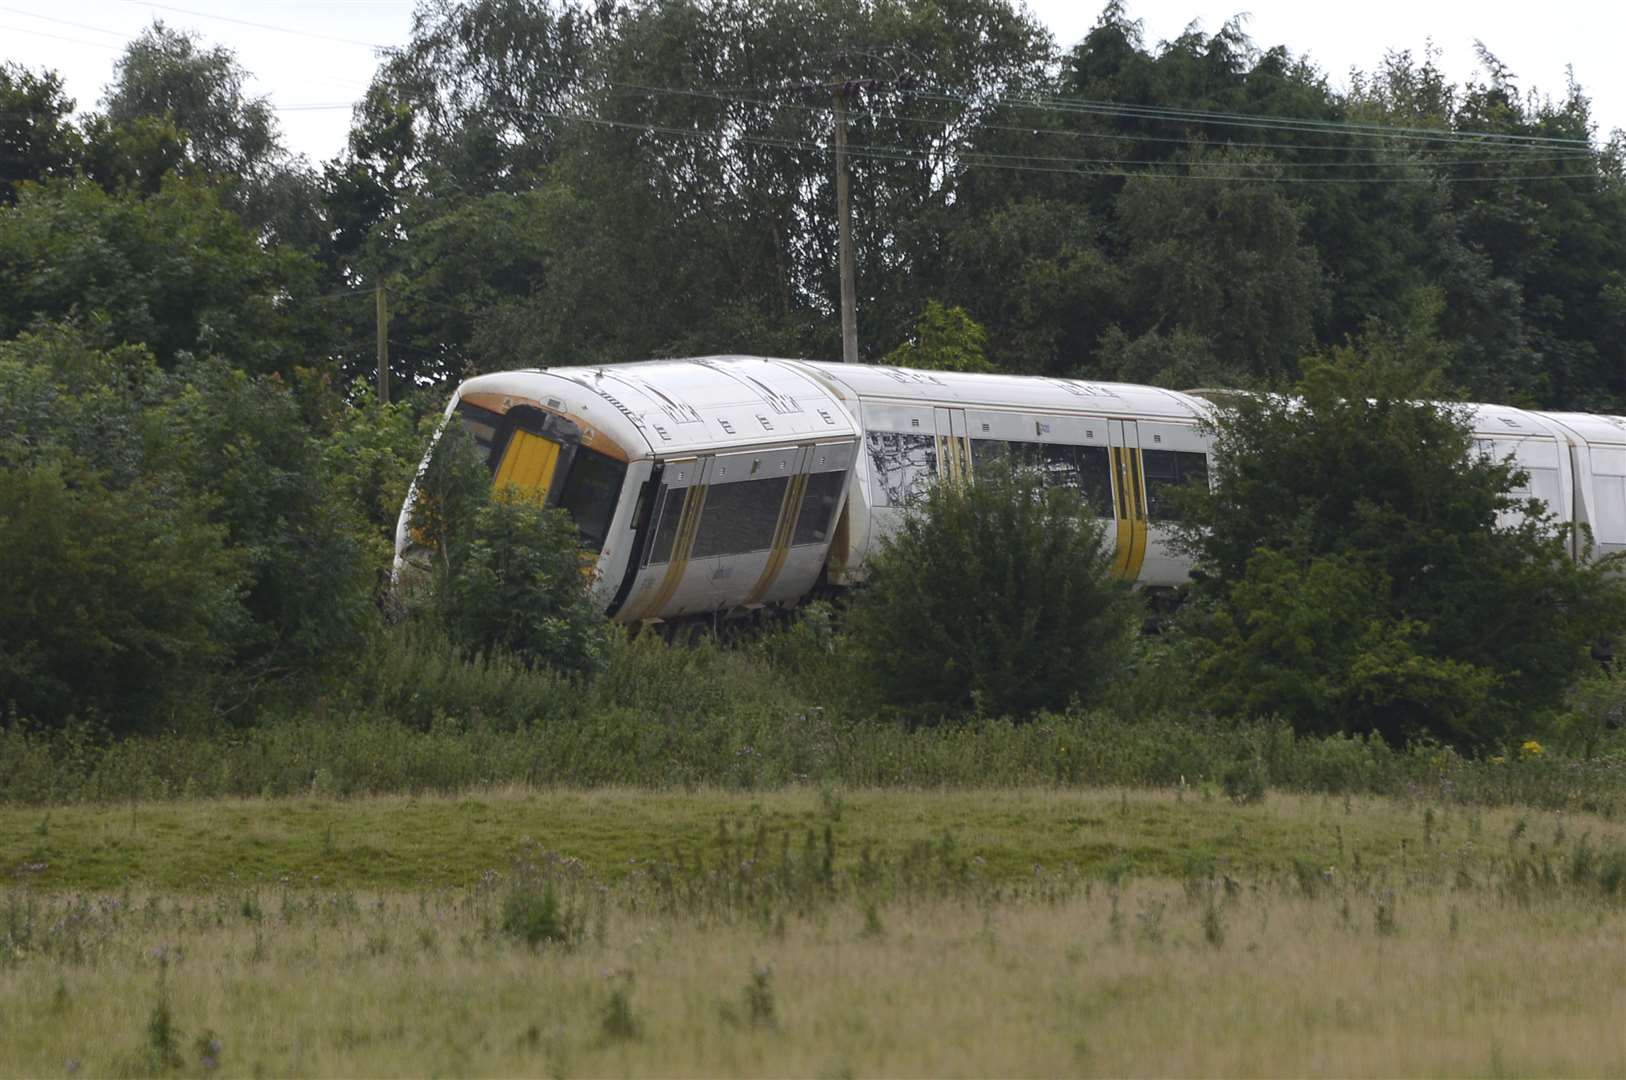 The derailed train on the Ashford to Canterbury rail line